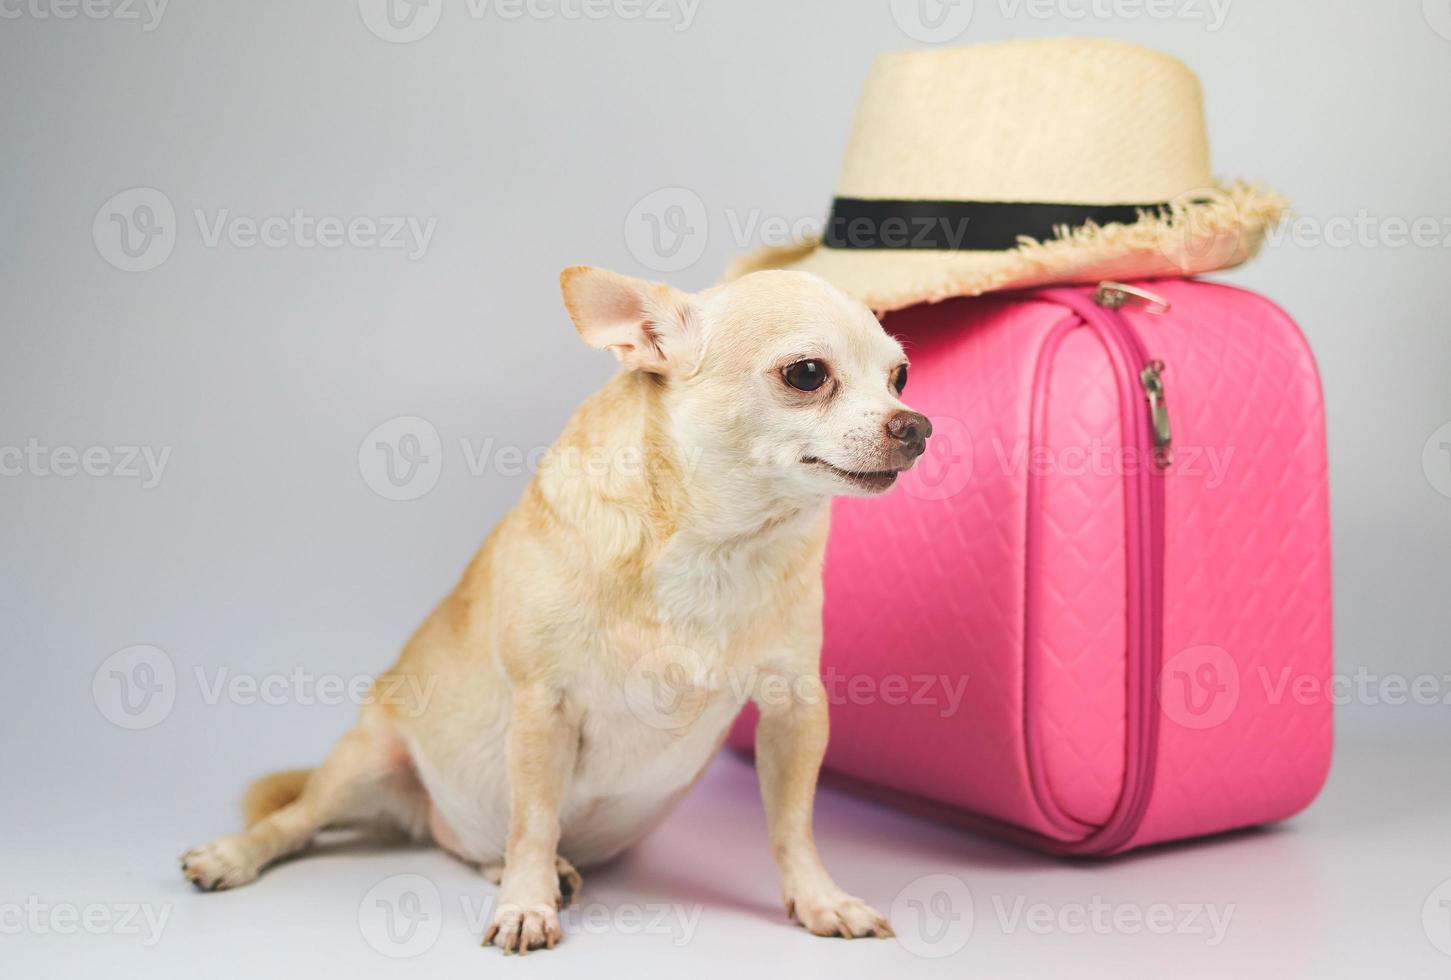 mignon chien chihuahua brun à cheveux courts assis sur fond blanc avec accessoires de voyage, chapeau de paille et valise rose. voyager avec le concept animal. photo